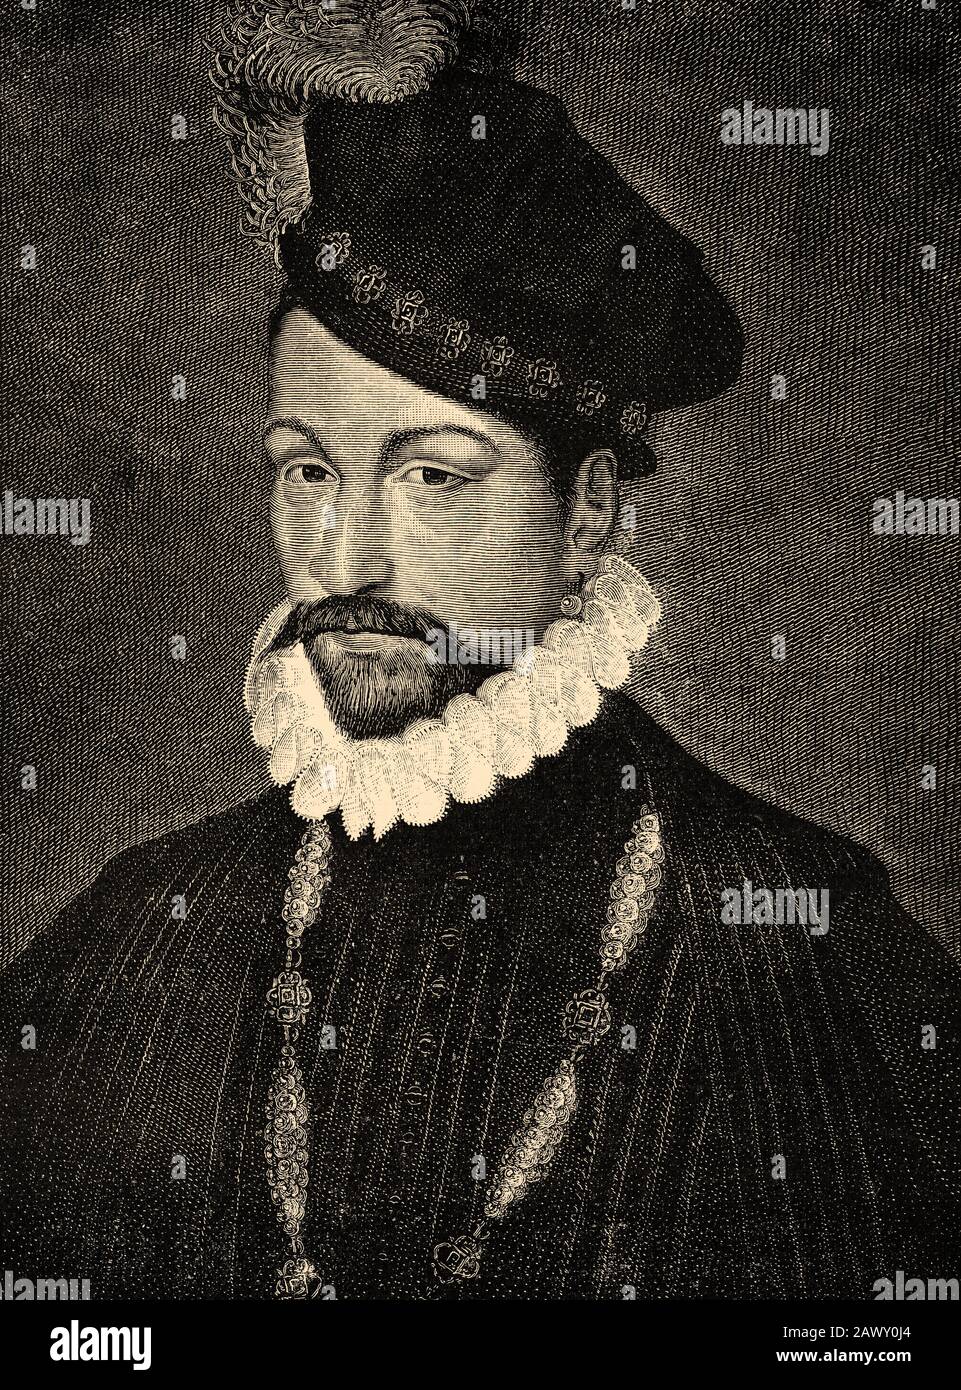 Retrato de Carlos IX de Francia, Carlos Maximiliano de Francia (Saint-Germain-en-Laye, 27 de junio de 1550 - Vincennes, 30 de mayo de 1574), fue Rey de Francia Foto de stock